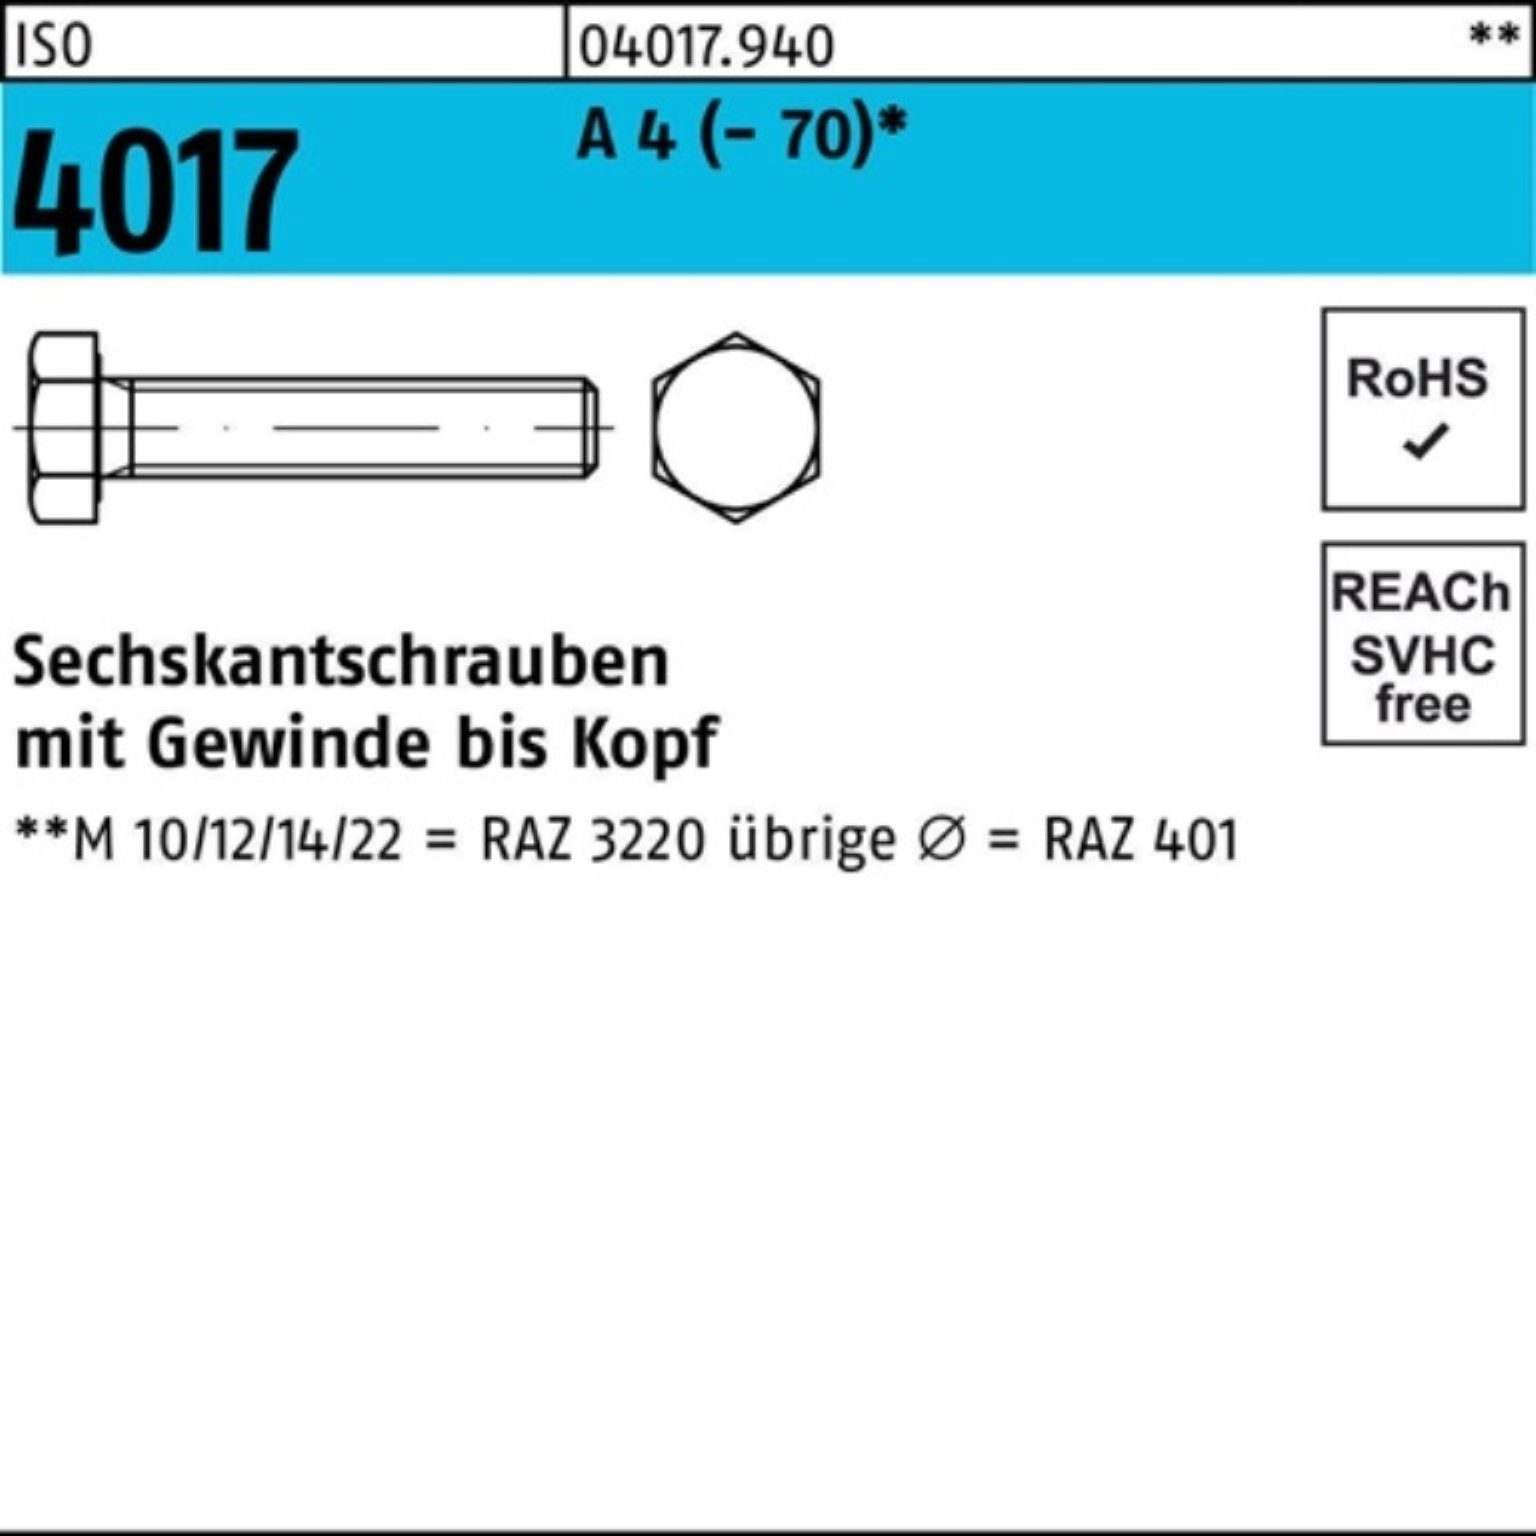 ISO Sechskantschraube Bufab 100er Sechskantschraube A Stück 170 Pack (70) 1 VG M10x 4017 4